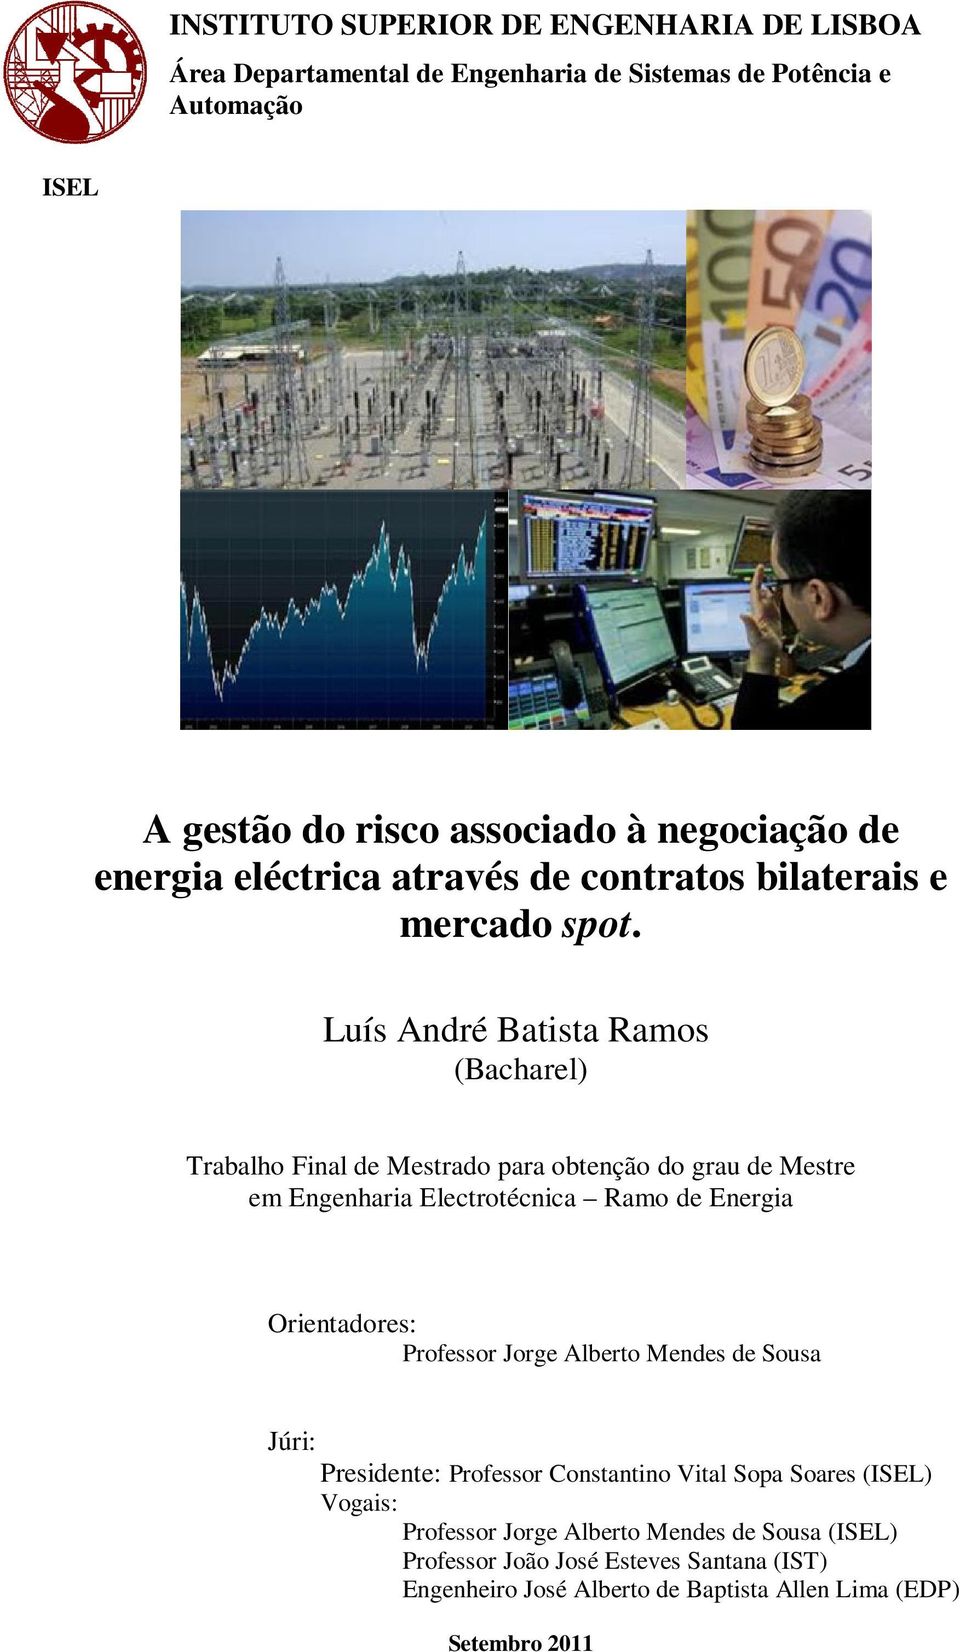 Luís André Batista Ramos (Bacharel) Trabalho Final de Mestrado para obtenção do grau de Mestre em Engenharia Electrotécnica Ramo de Energia Orientadores: